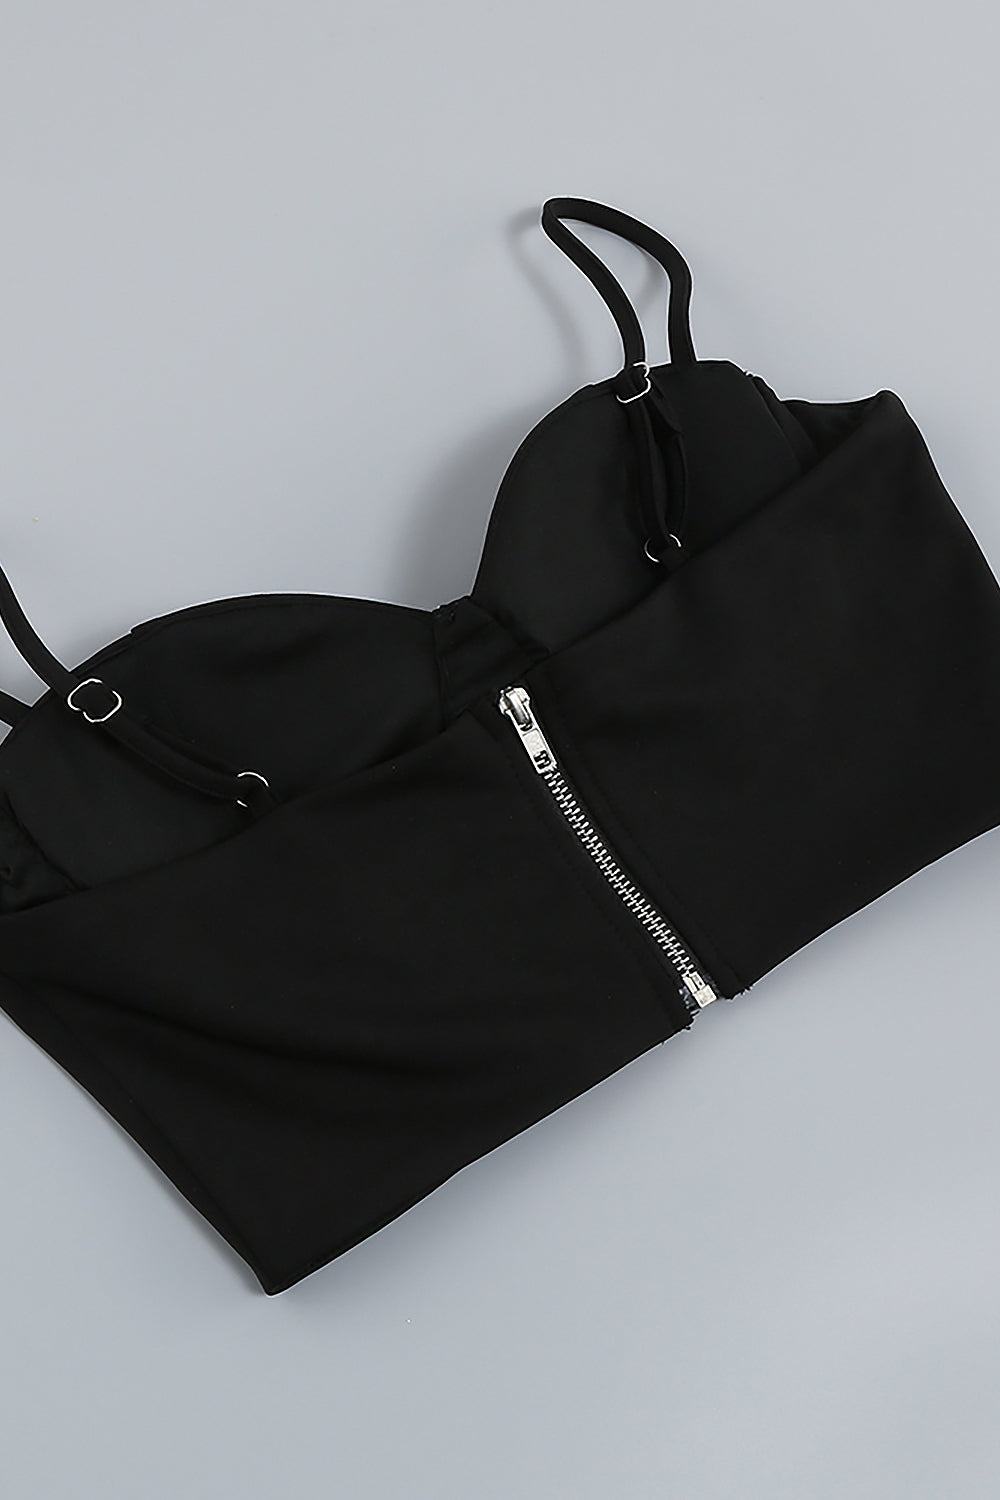 Conjunto de dos piezas negro, top corto con tiras de cristal y pantalones ajustados